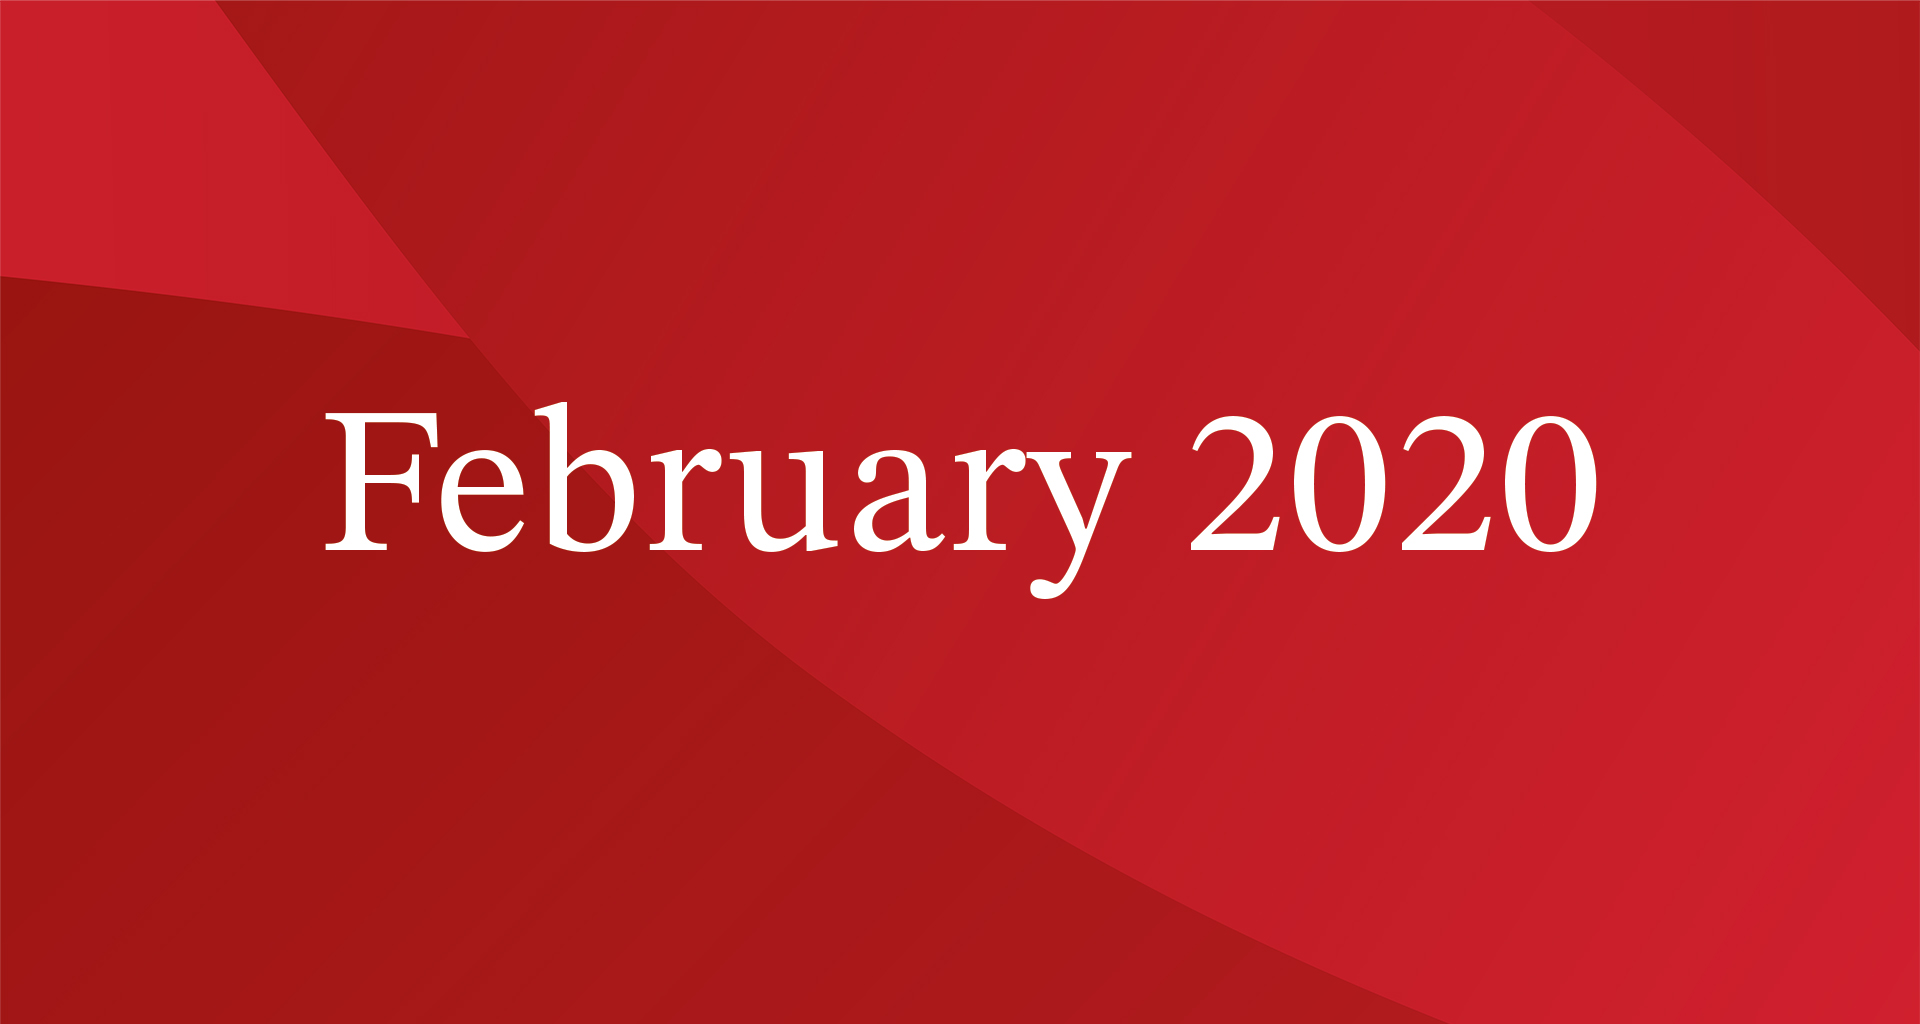 February 2020 President's Blog Image